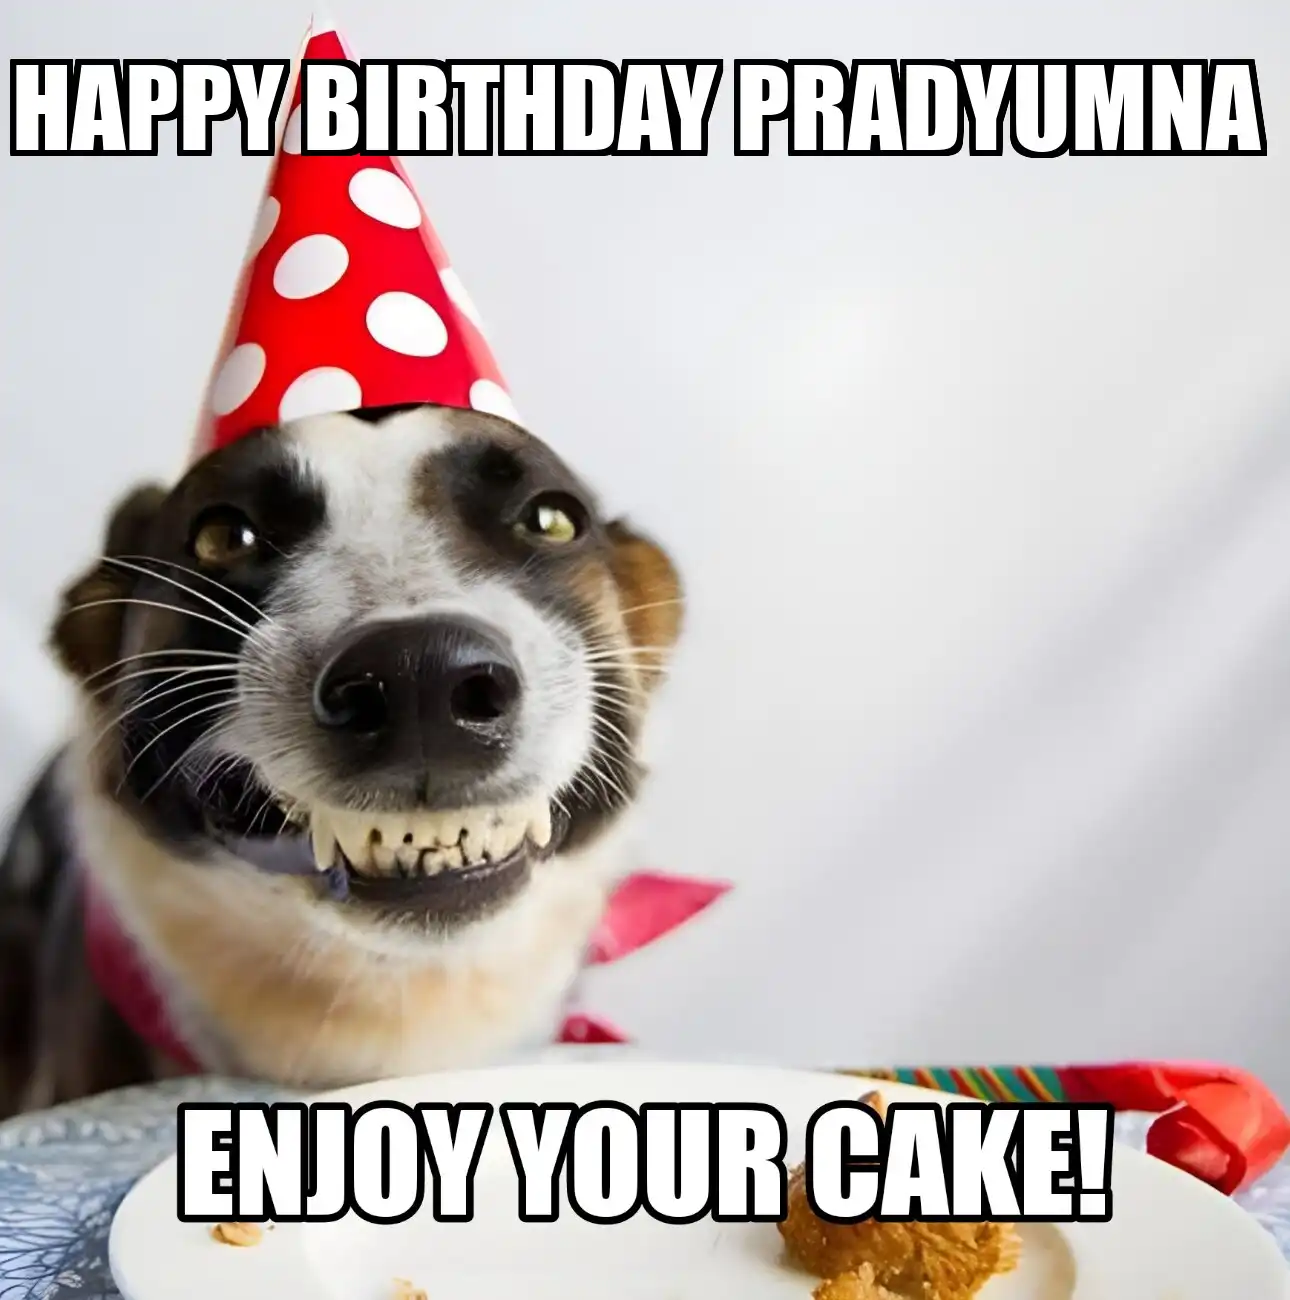 Happy Birthday Pradyumna Enjoy Your Cake Dog Meme